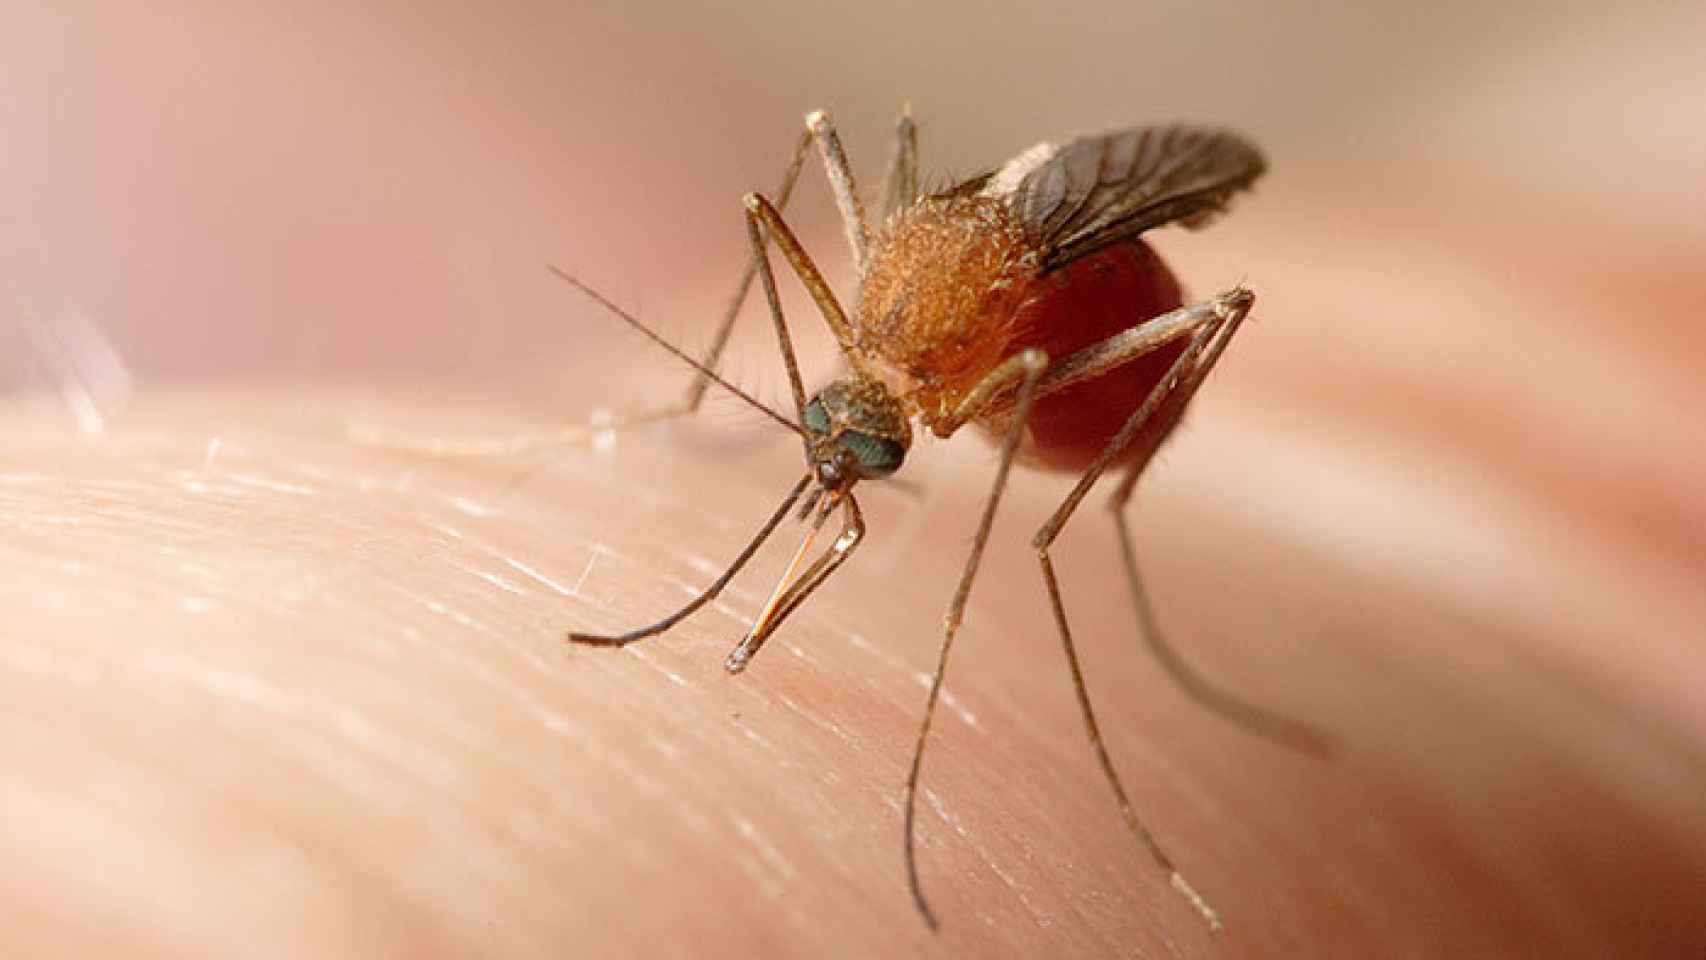 Un mosquito común se posa sobre el brazo de una persona.